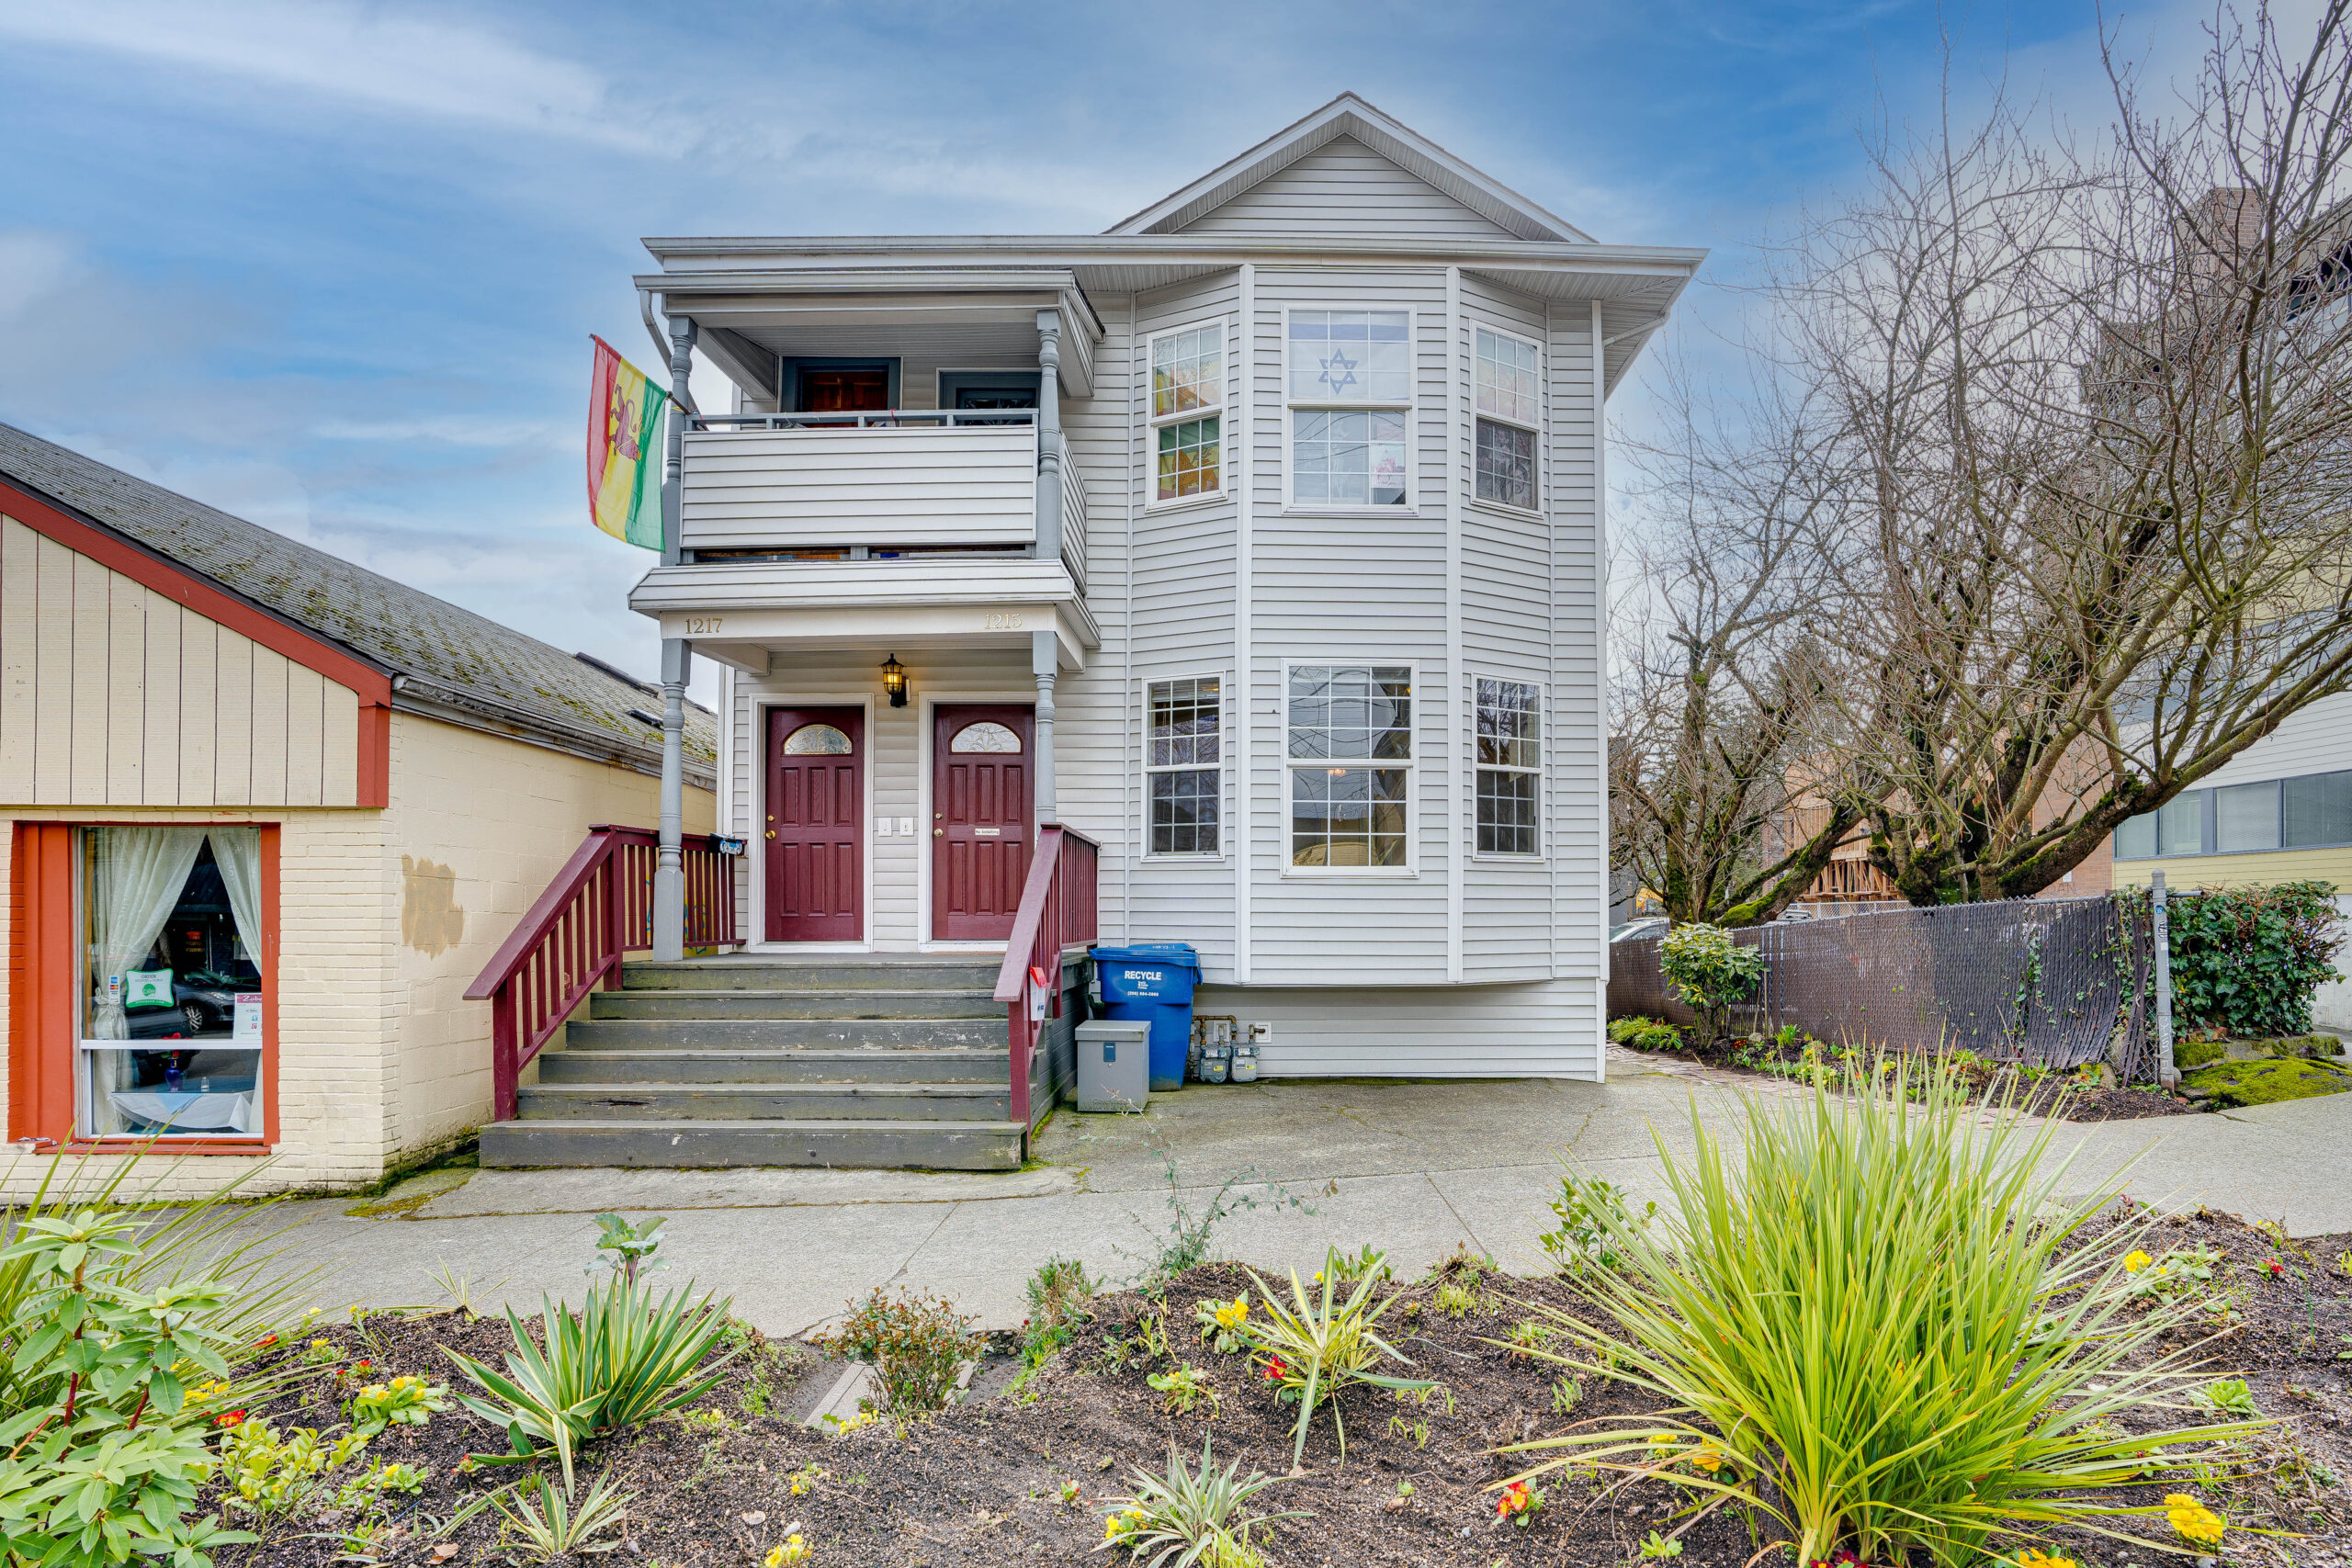 1215 E Jefferson St Seattle, WA 98122 – 2bd/1ba Duplex, $2,095 per month